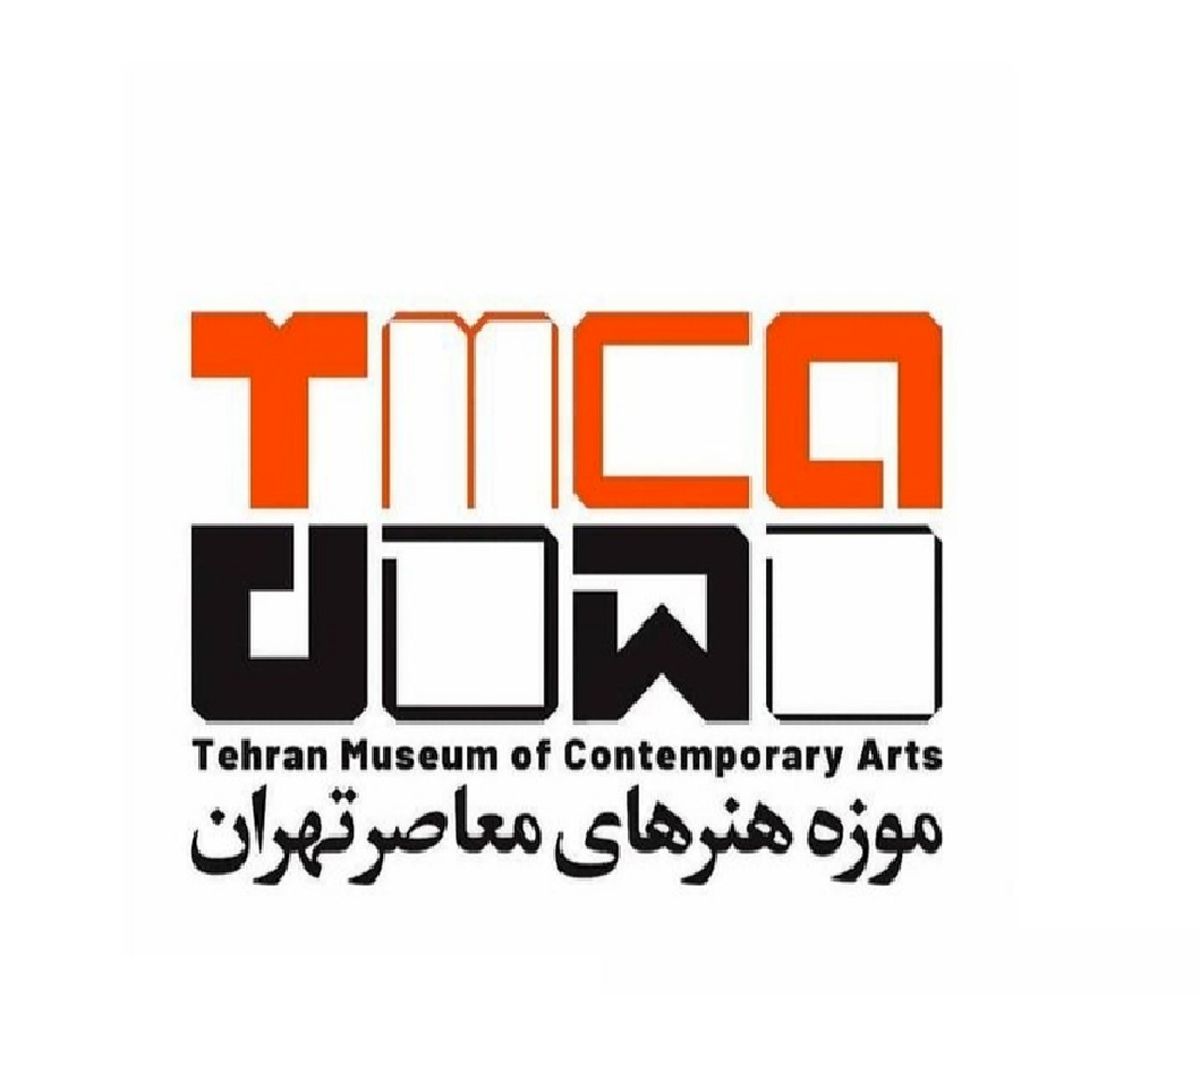 مقایسه+نشان+جدید+وقدیمی+موزه+هنرهای+معاصر+تهران